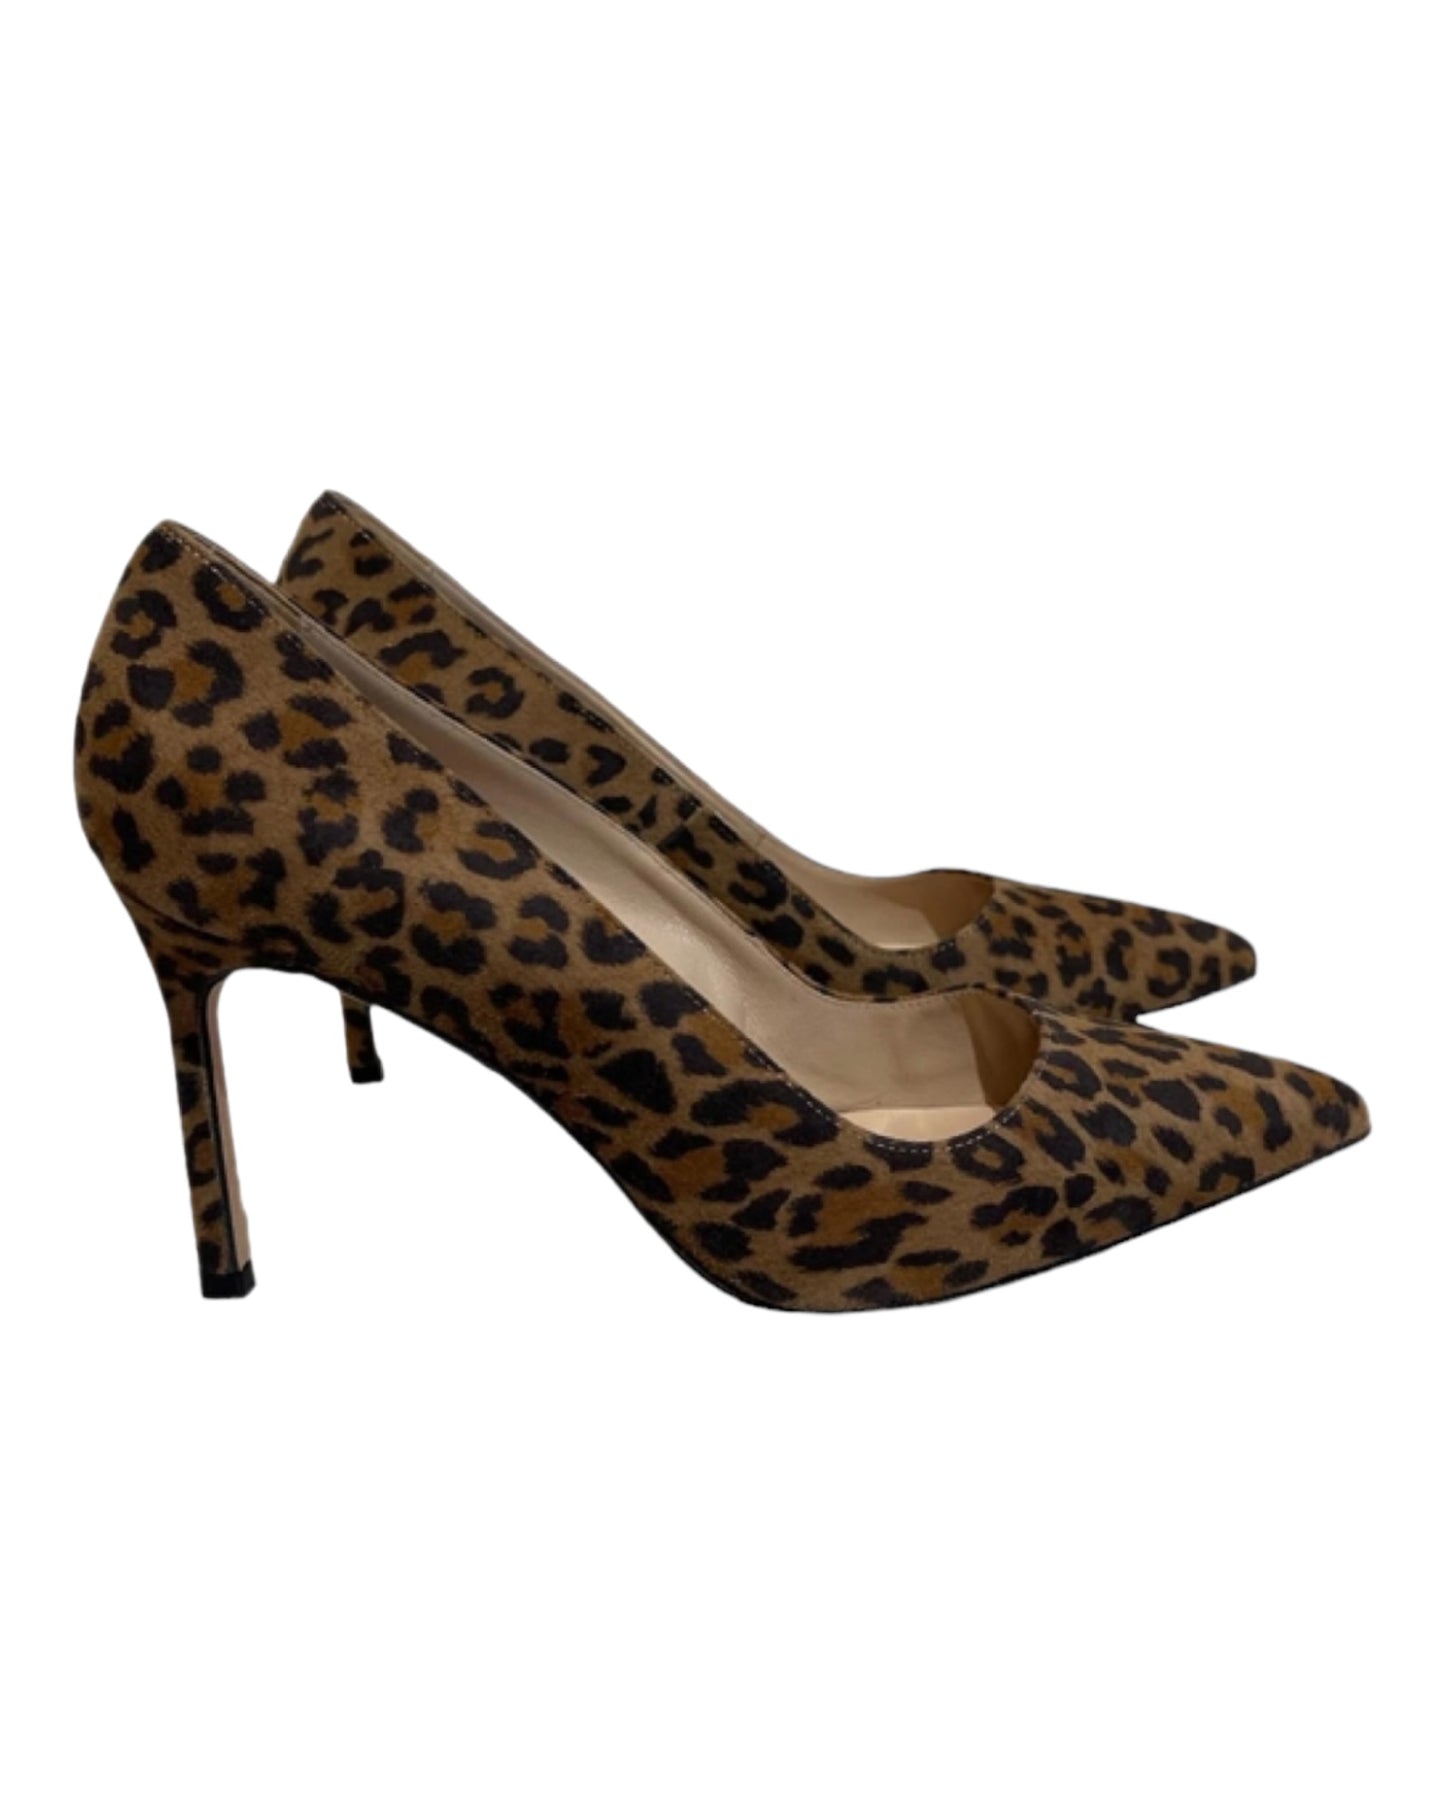 Vintage Manolo Blahnik leopard print heels